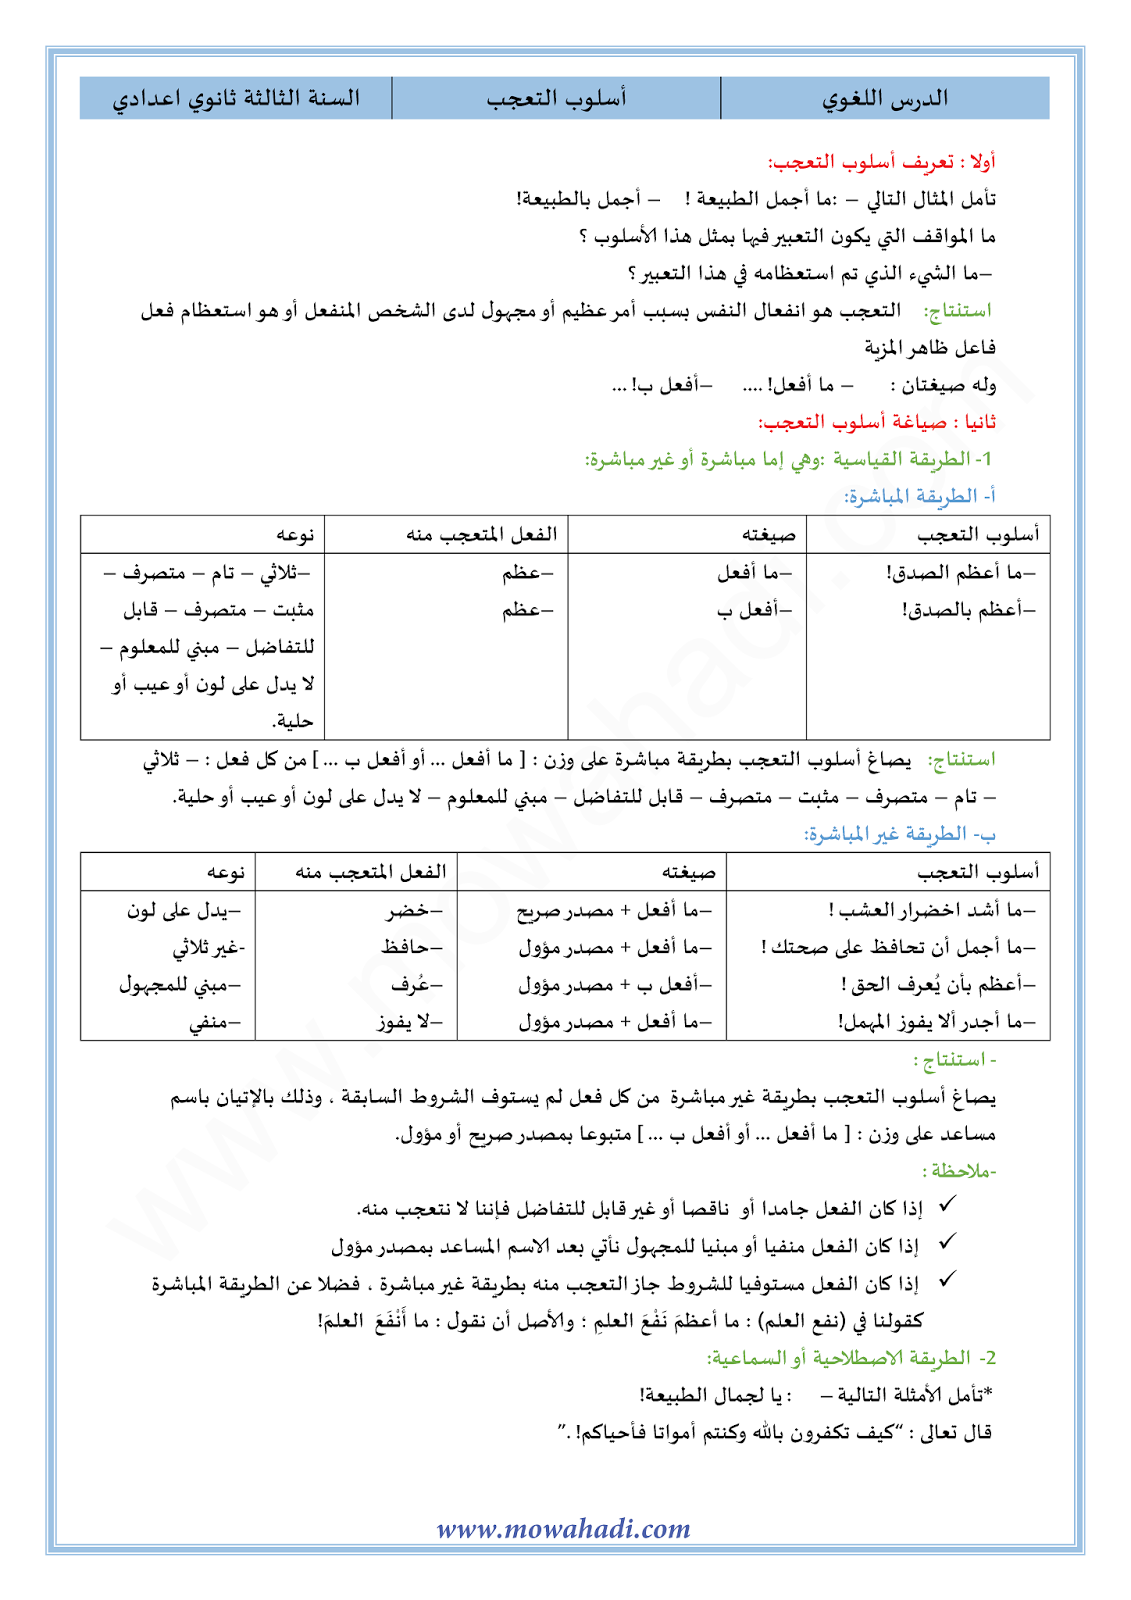 الدرس اللغوي أسلوب التعجب للسنة الثالثة اعدادي في مادة اللغة العربية 9-cours-dars-loghawi3_001